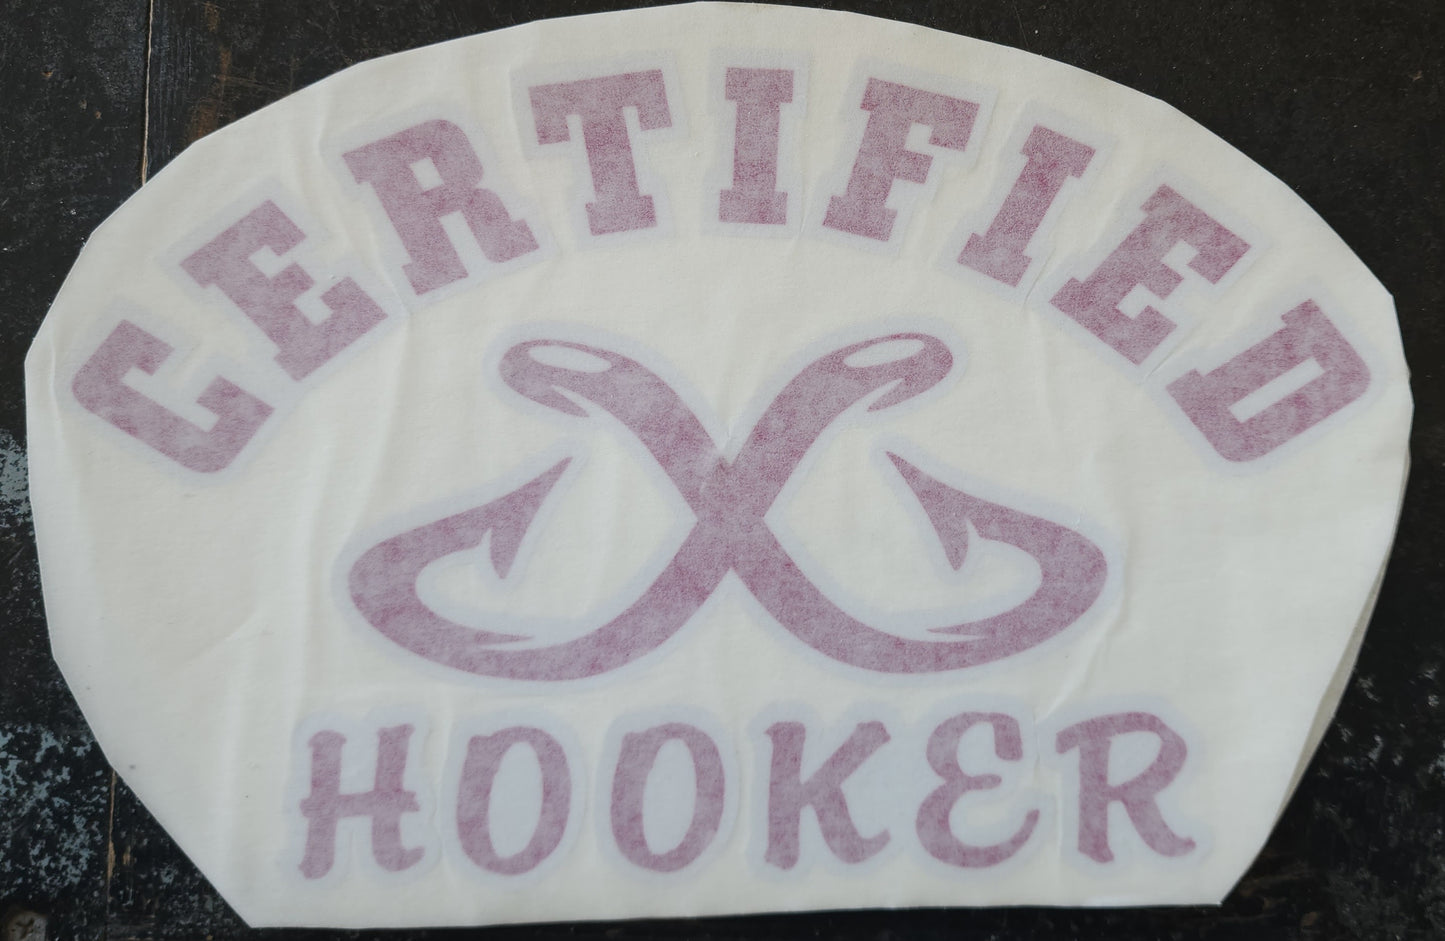 Certified hooker logo decals